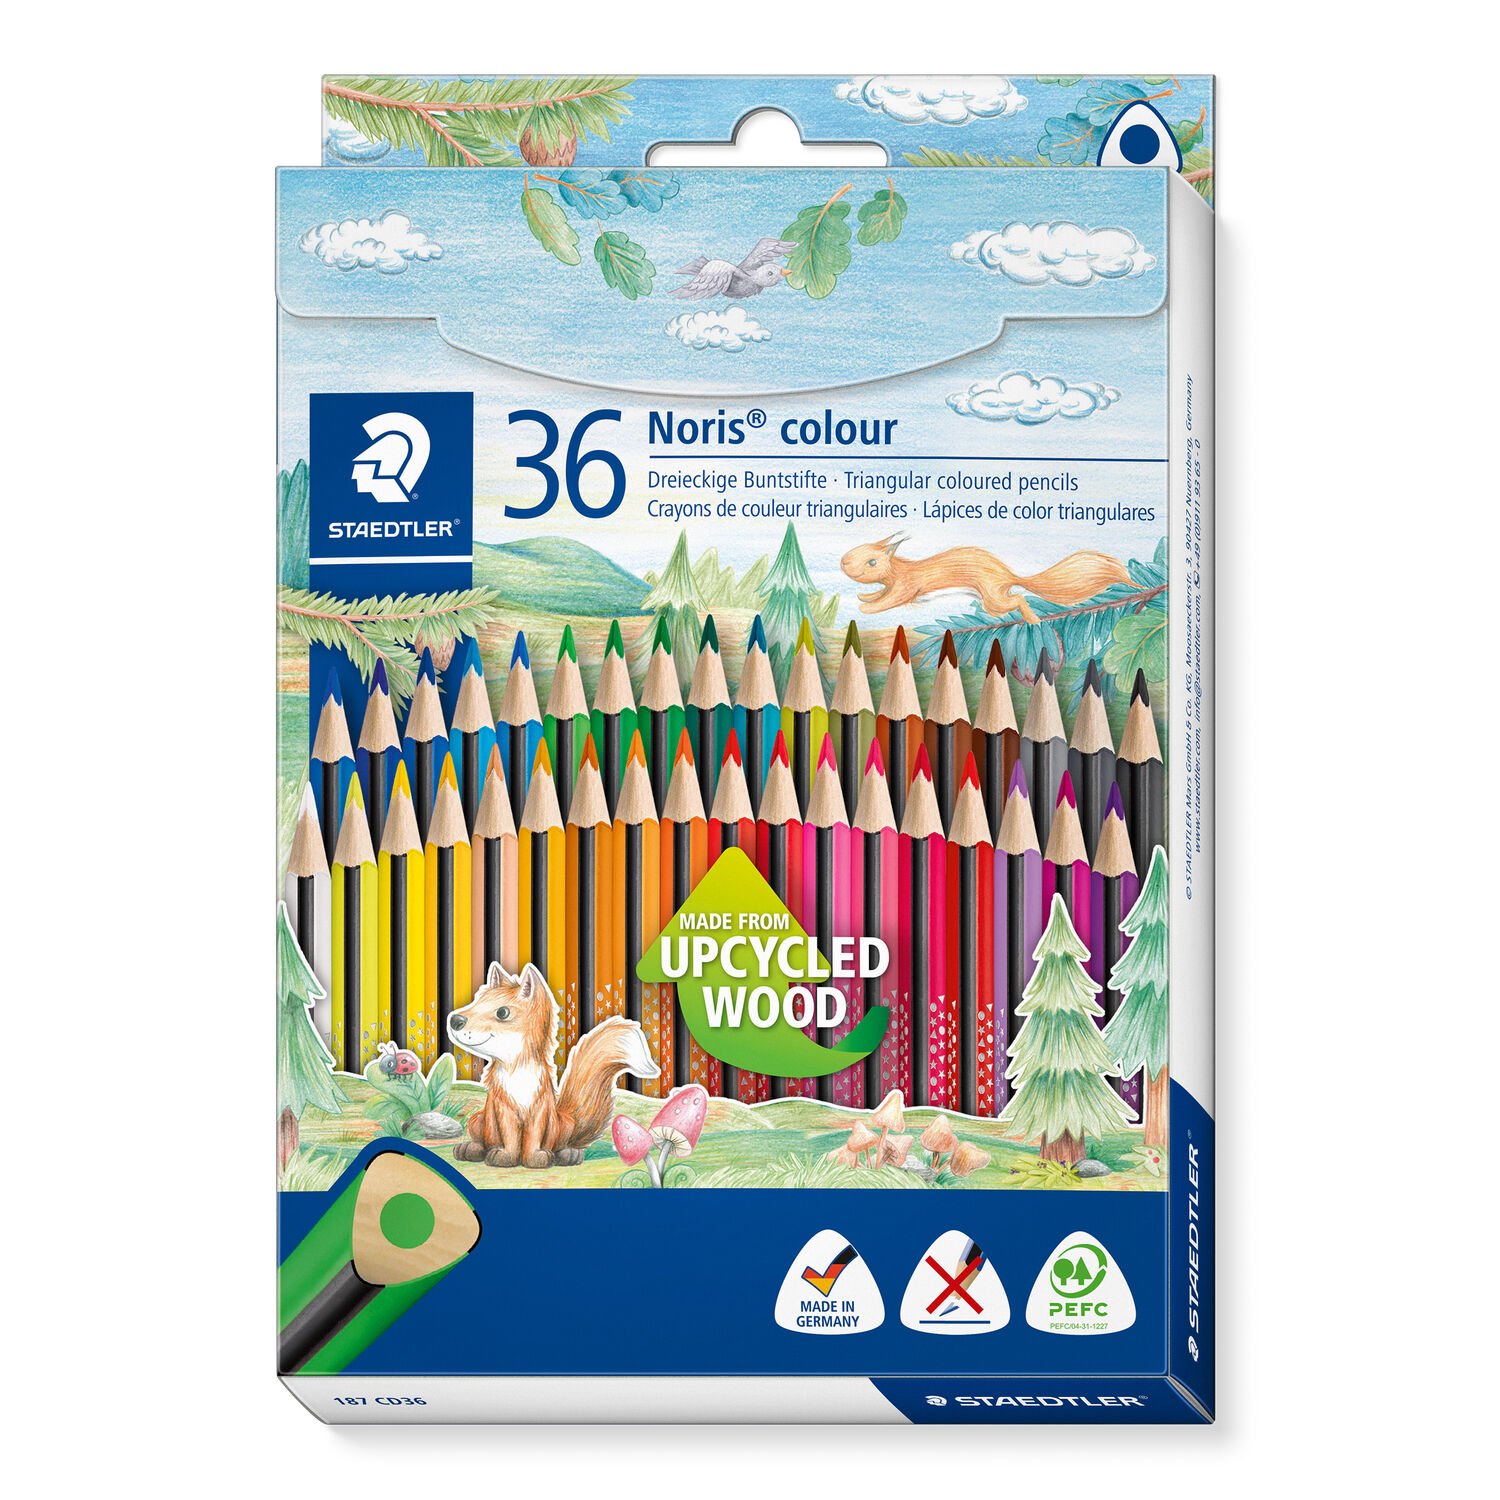 Etui carton double couche de 36 crayons de couleurs triangulaires assortis